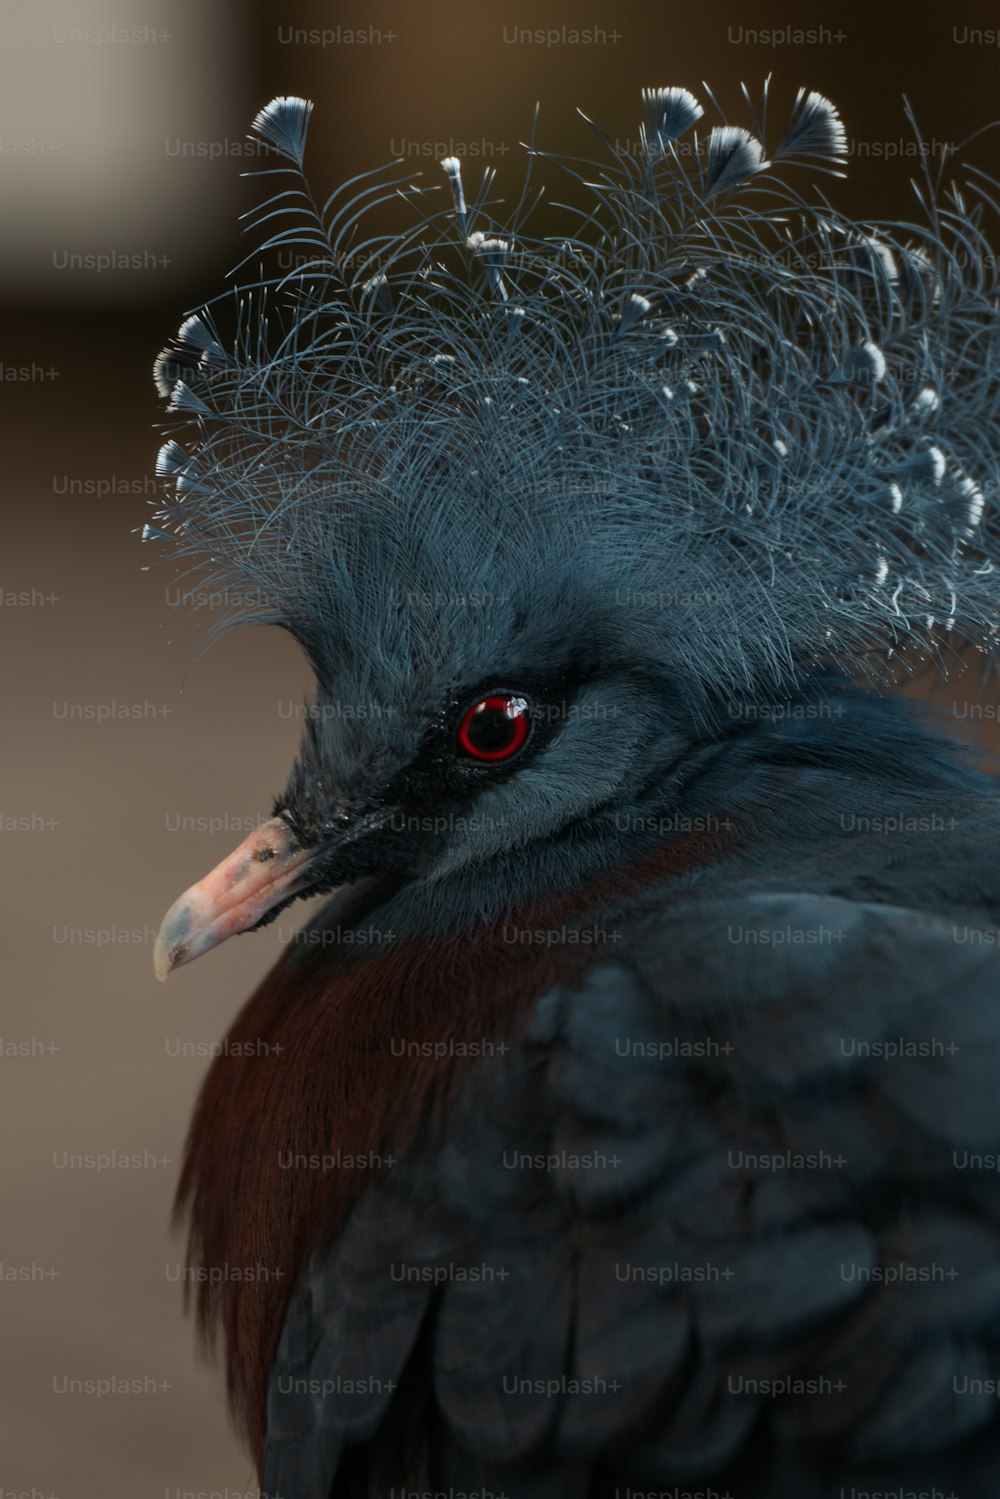 Un primer plano de un pájaro con plumas en la cabeza